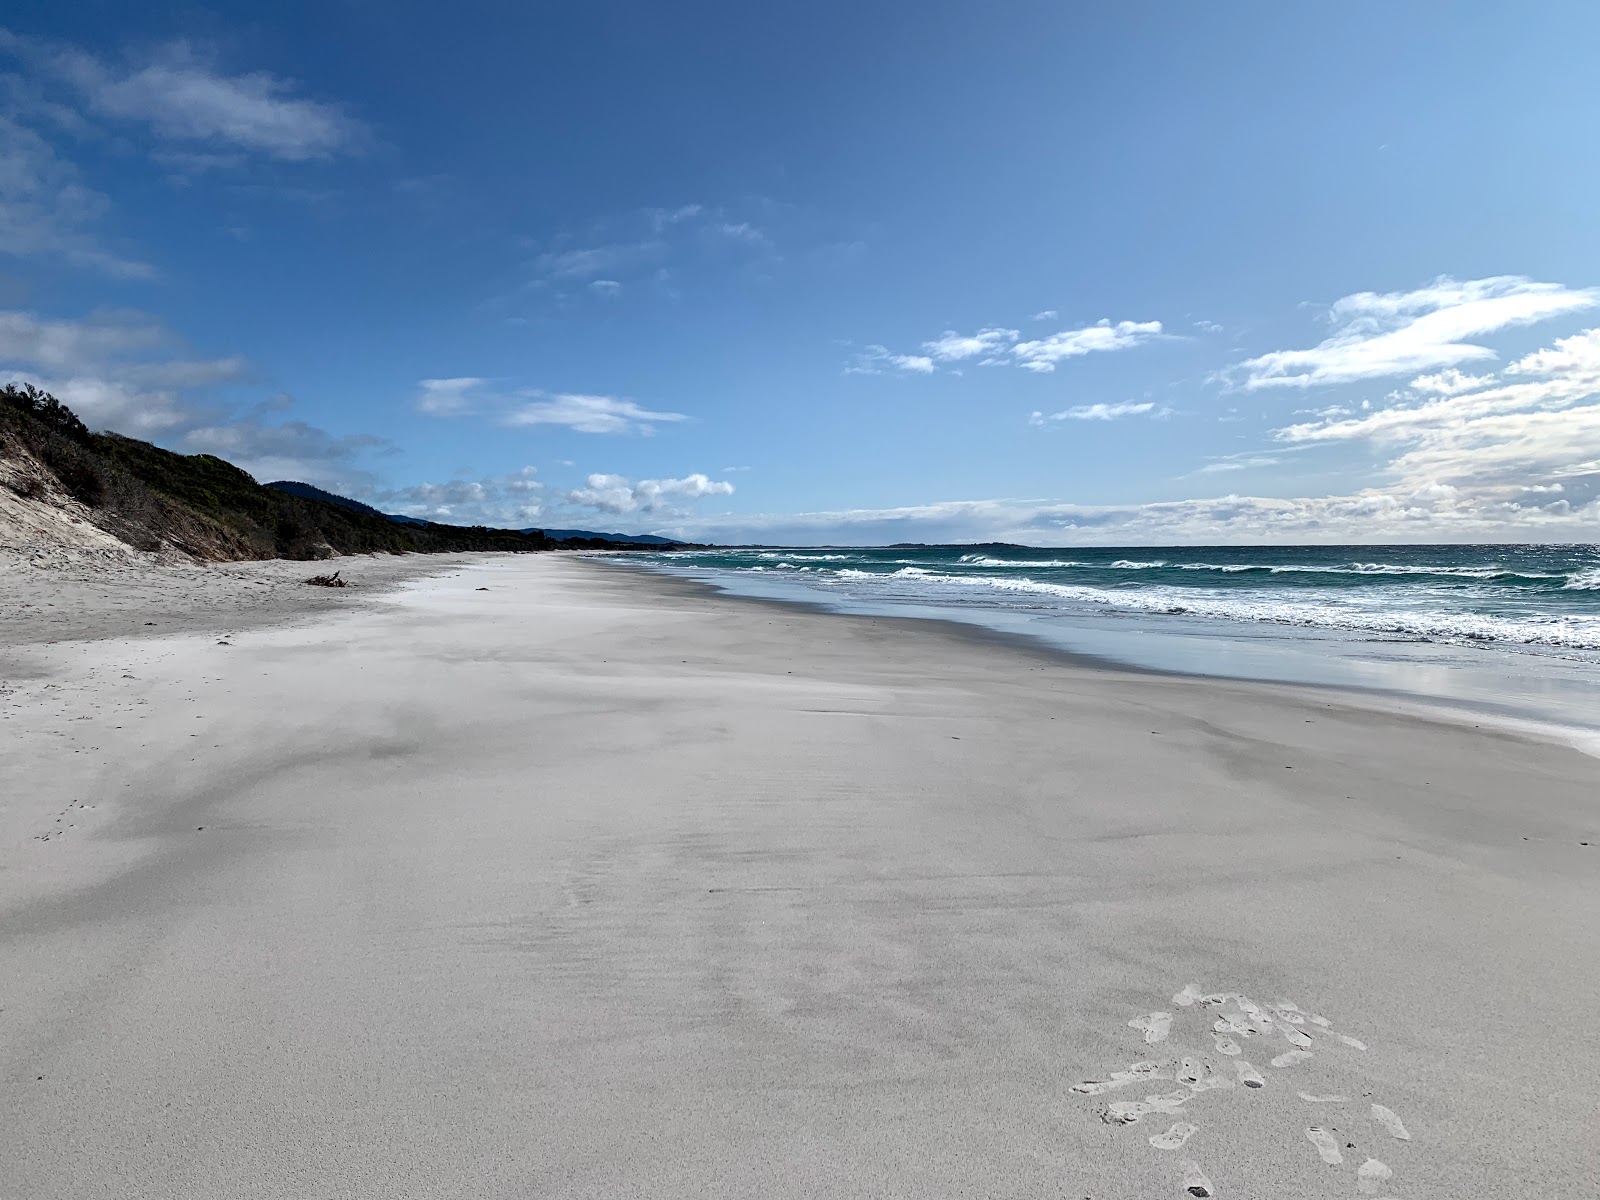 Fotografie cu Denison Beach cu o suprafață de nisip alb